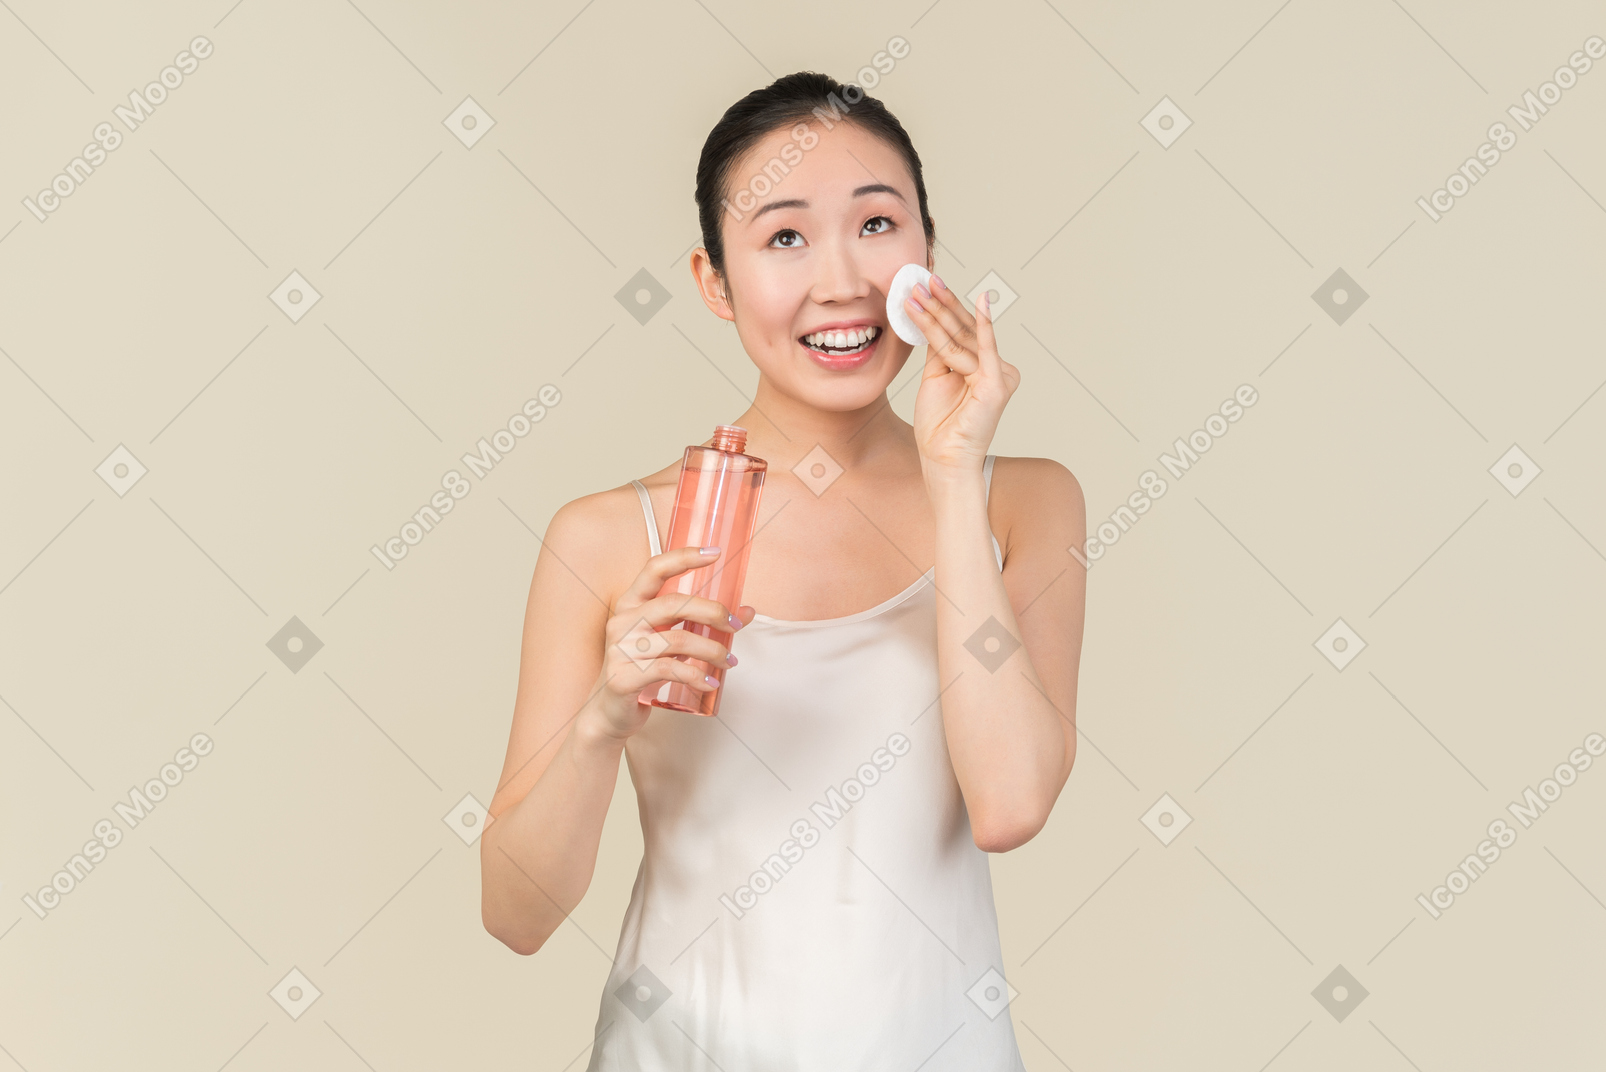 얼굴 피부에 화장품을 적용 들고 웃는 젊은 아시아 여자